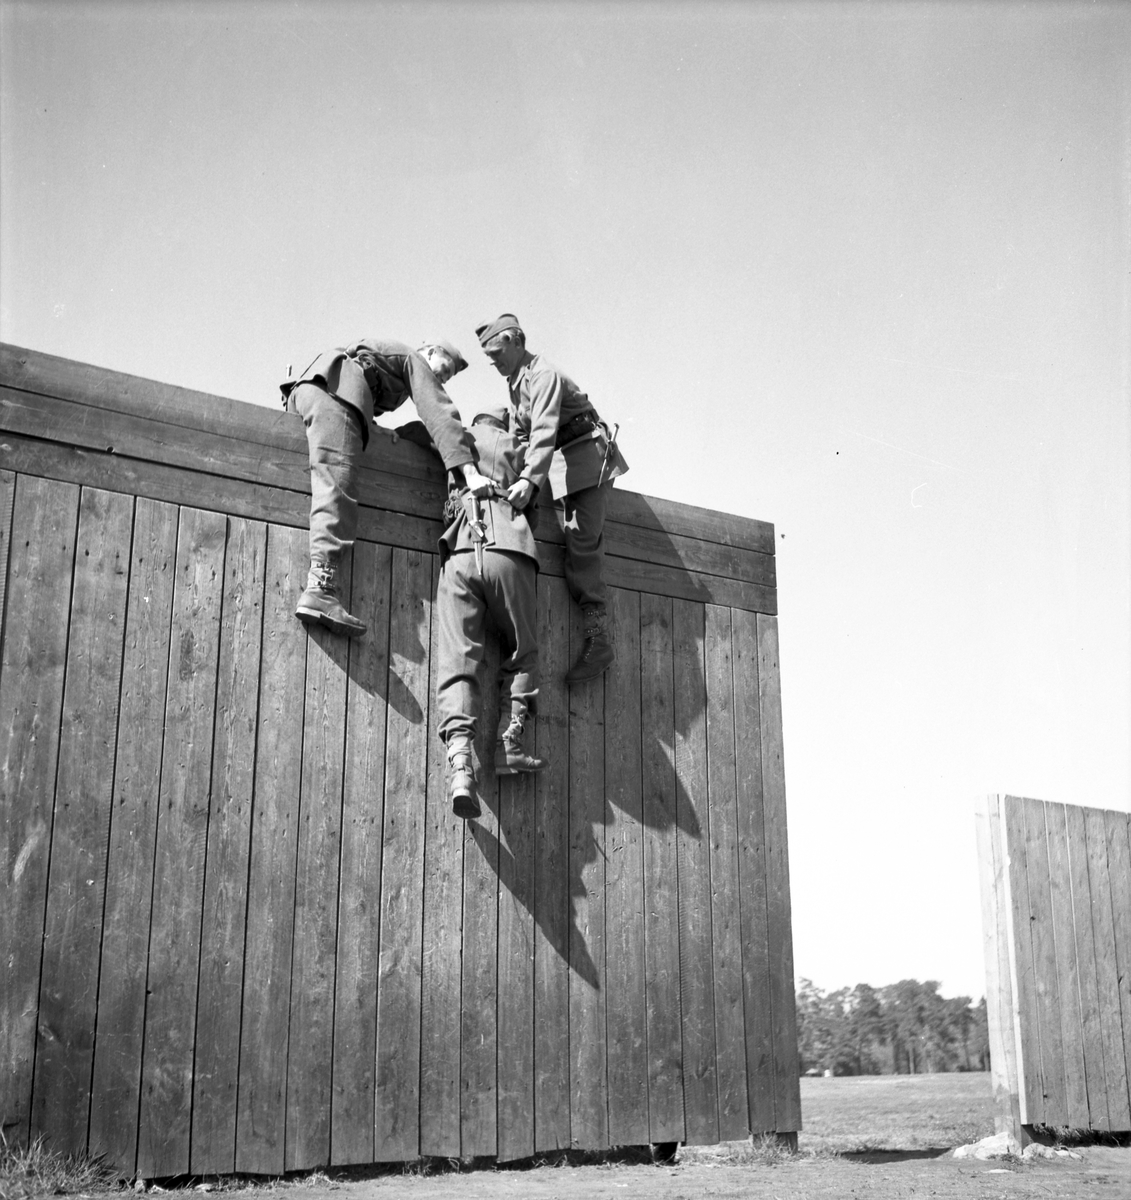 Soldatutbildning för Befälsutbildning. Reportage för Centralförbundet
Maj 1946



